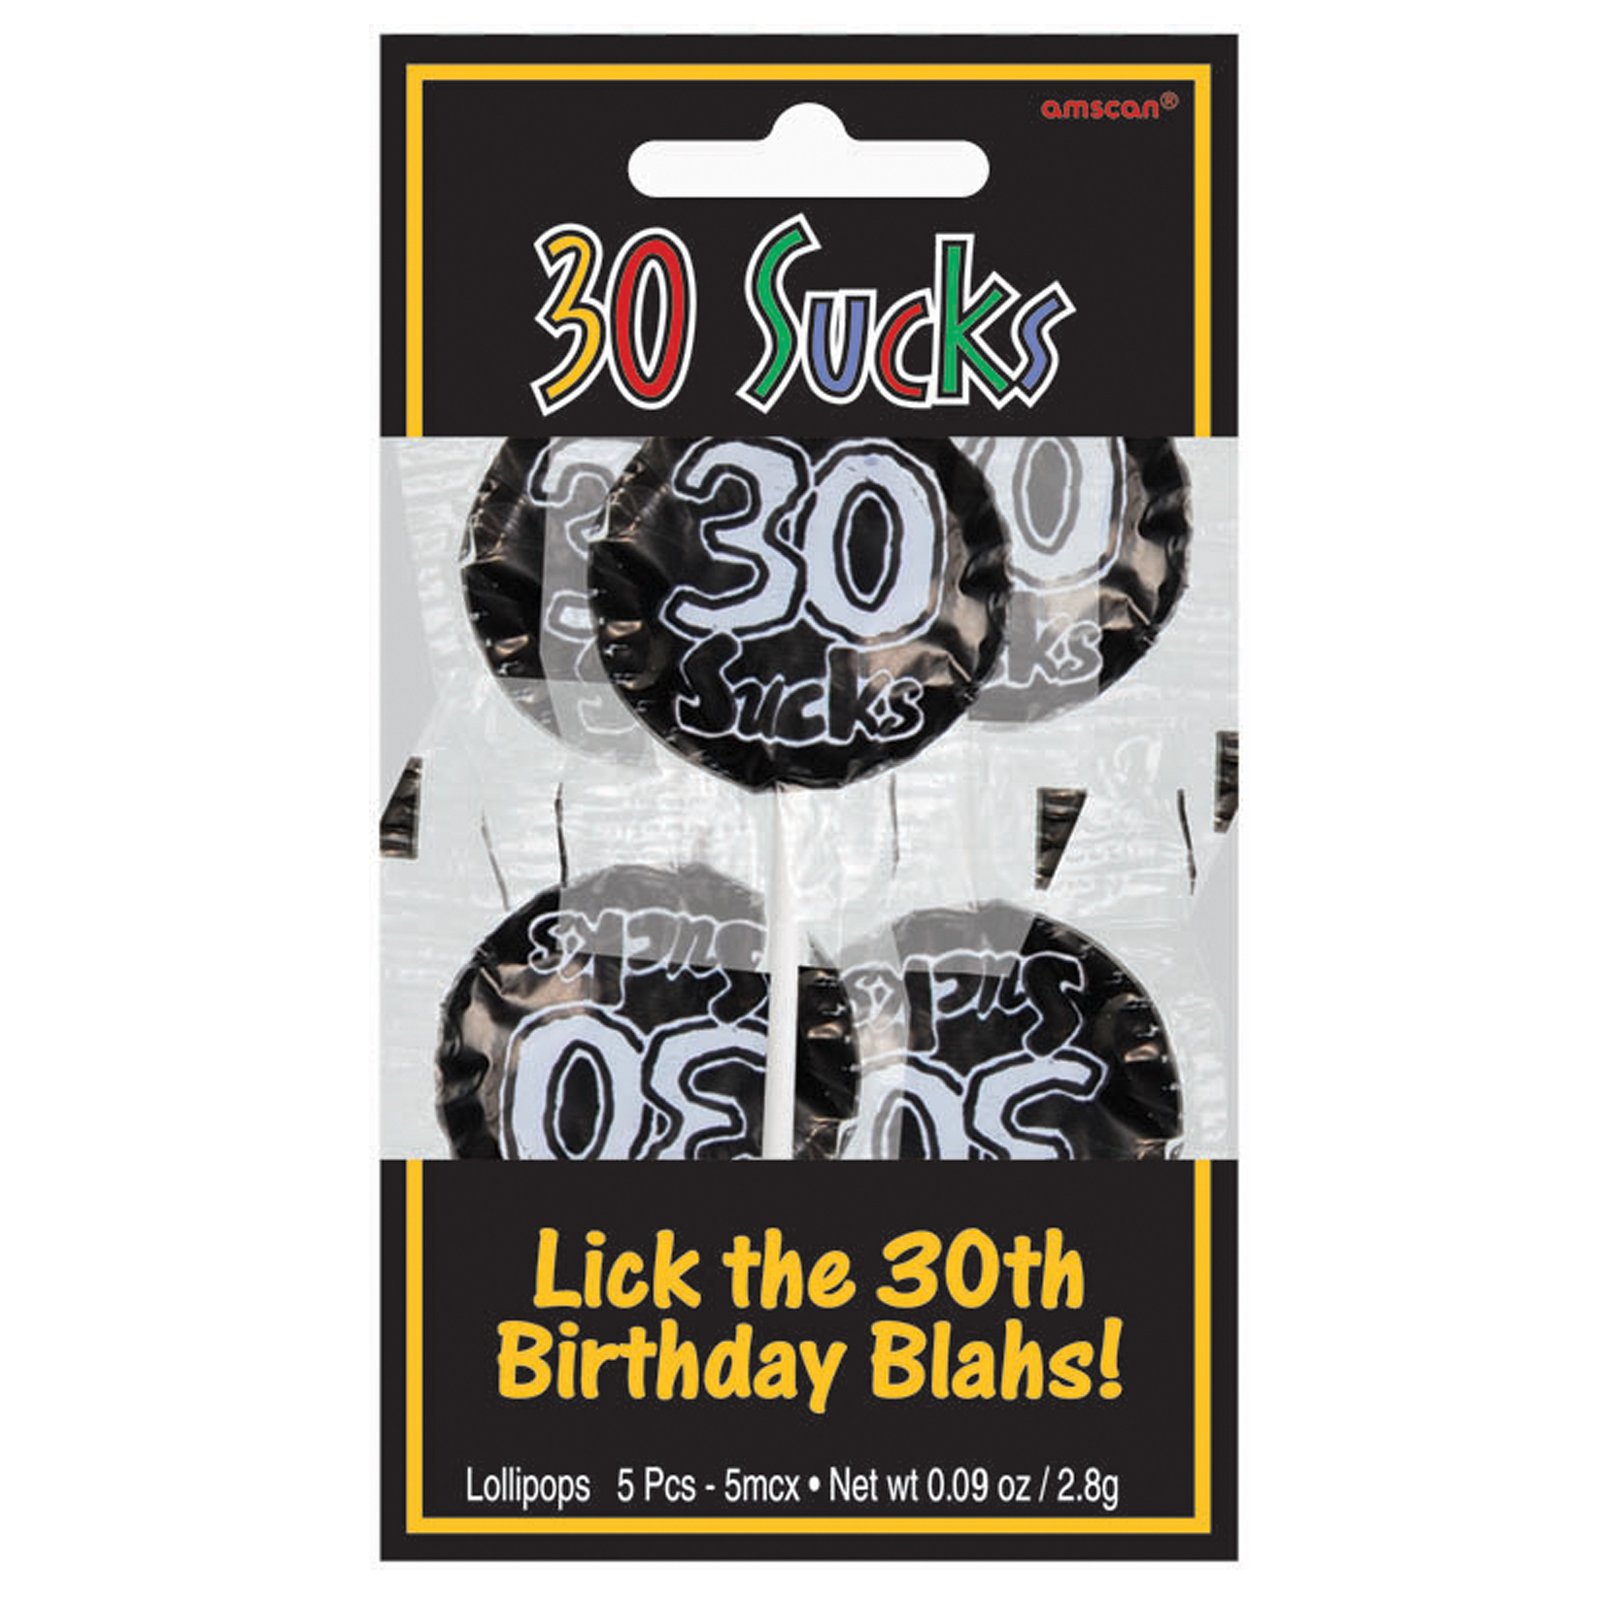 30 Sucks Lollipops (5 count)